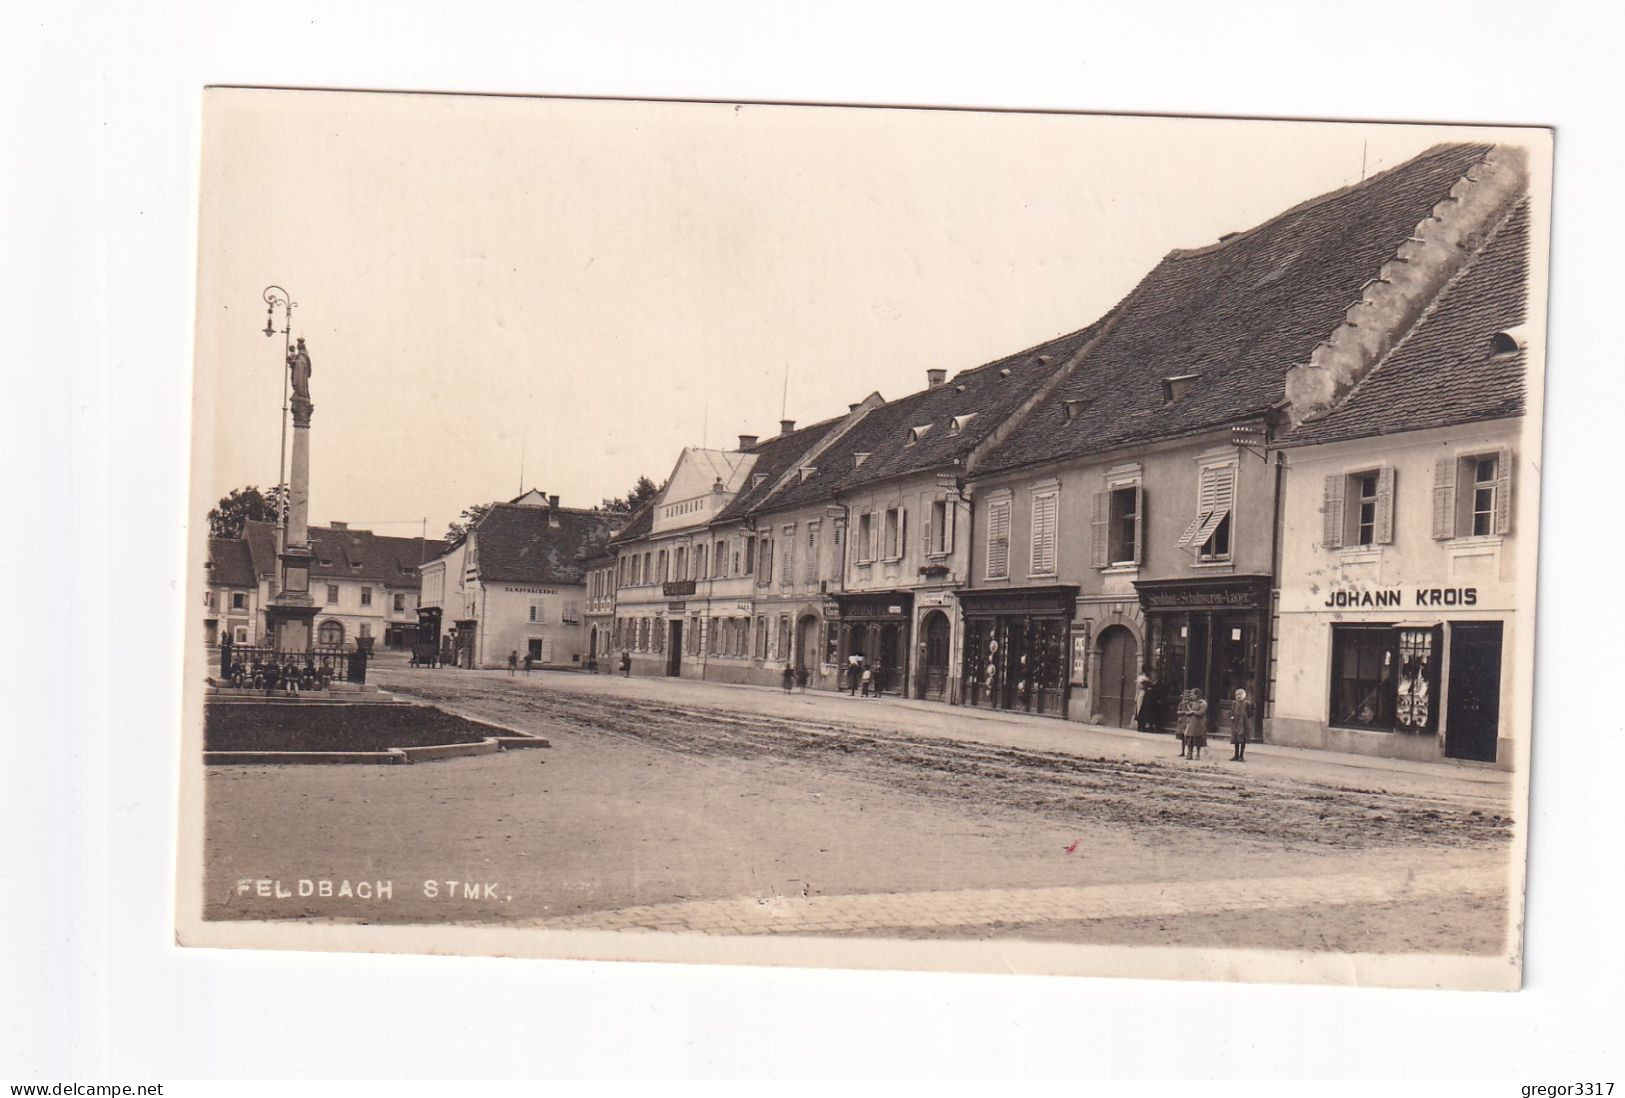 E5294) FELDBACH - Stmk. - Geschäft JOHANN KROIS - Kinder U. Tolle DEtails ALT! 01.10.1931 - Feldbach